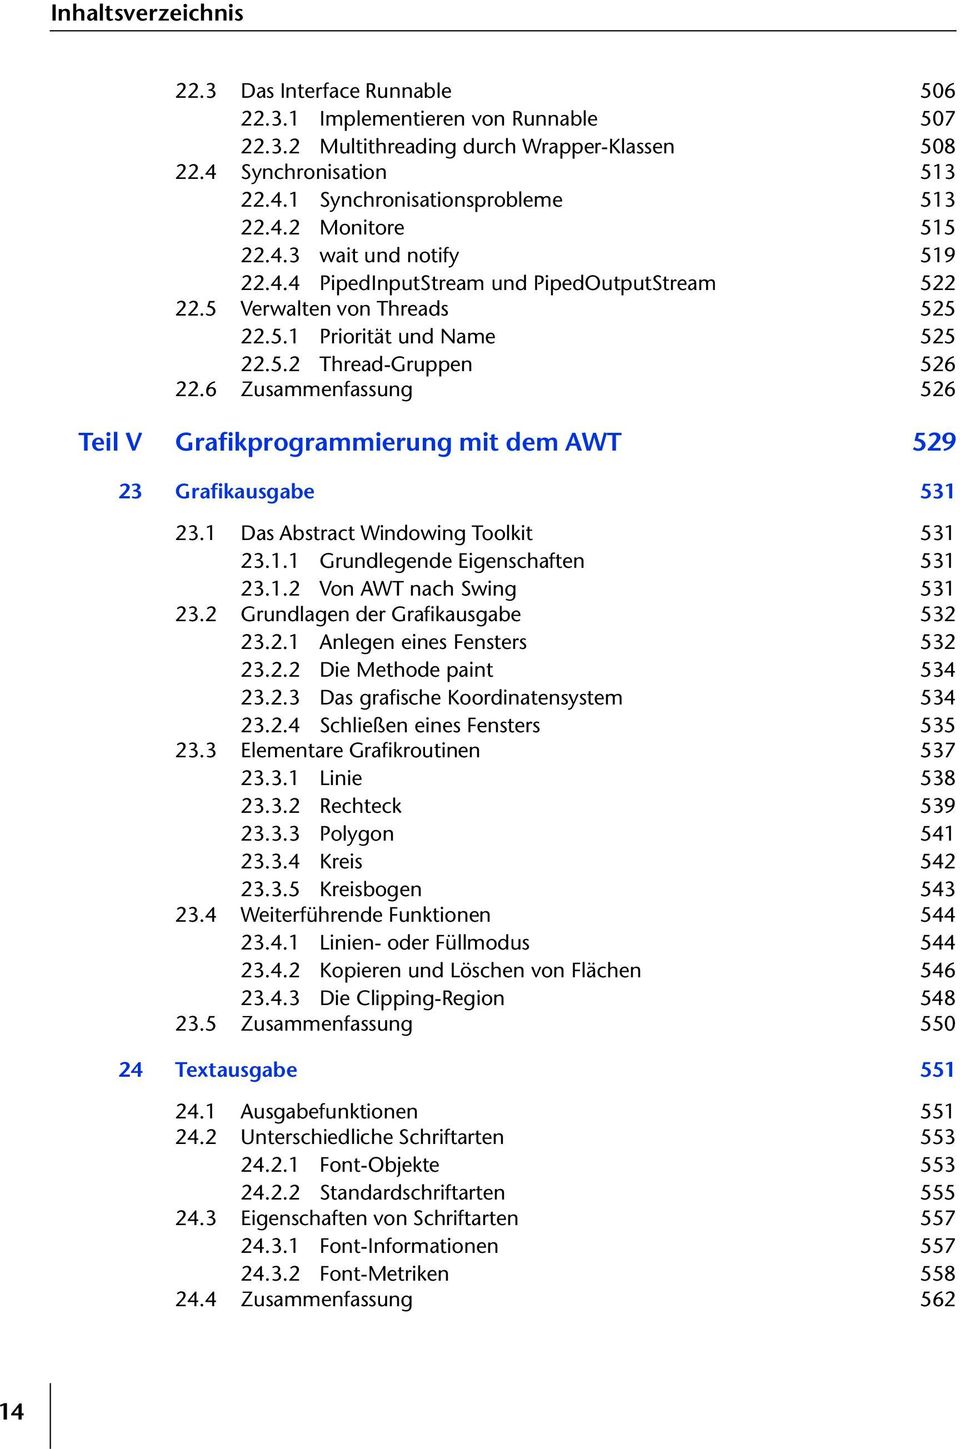 6 Zusammenfassung 526 Teil V Grafikprogrammierung mit dem AWT 529 23 Grafikausgabe 531 23.1 Das Abstract Windowing Toolkit 531 23.1.1 Grundlegende Eigenschaften 531 23.1.2 Von AWT nach Swing 531 23.